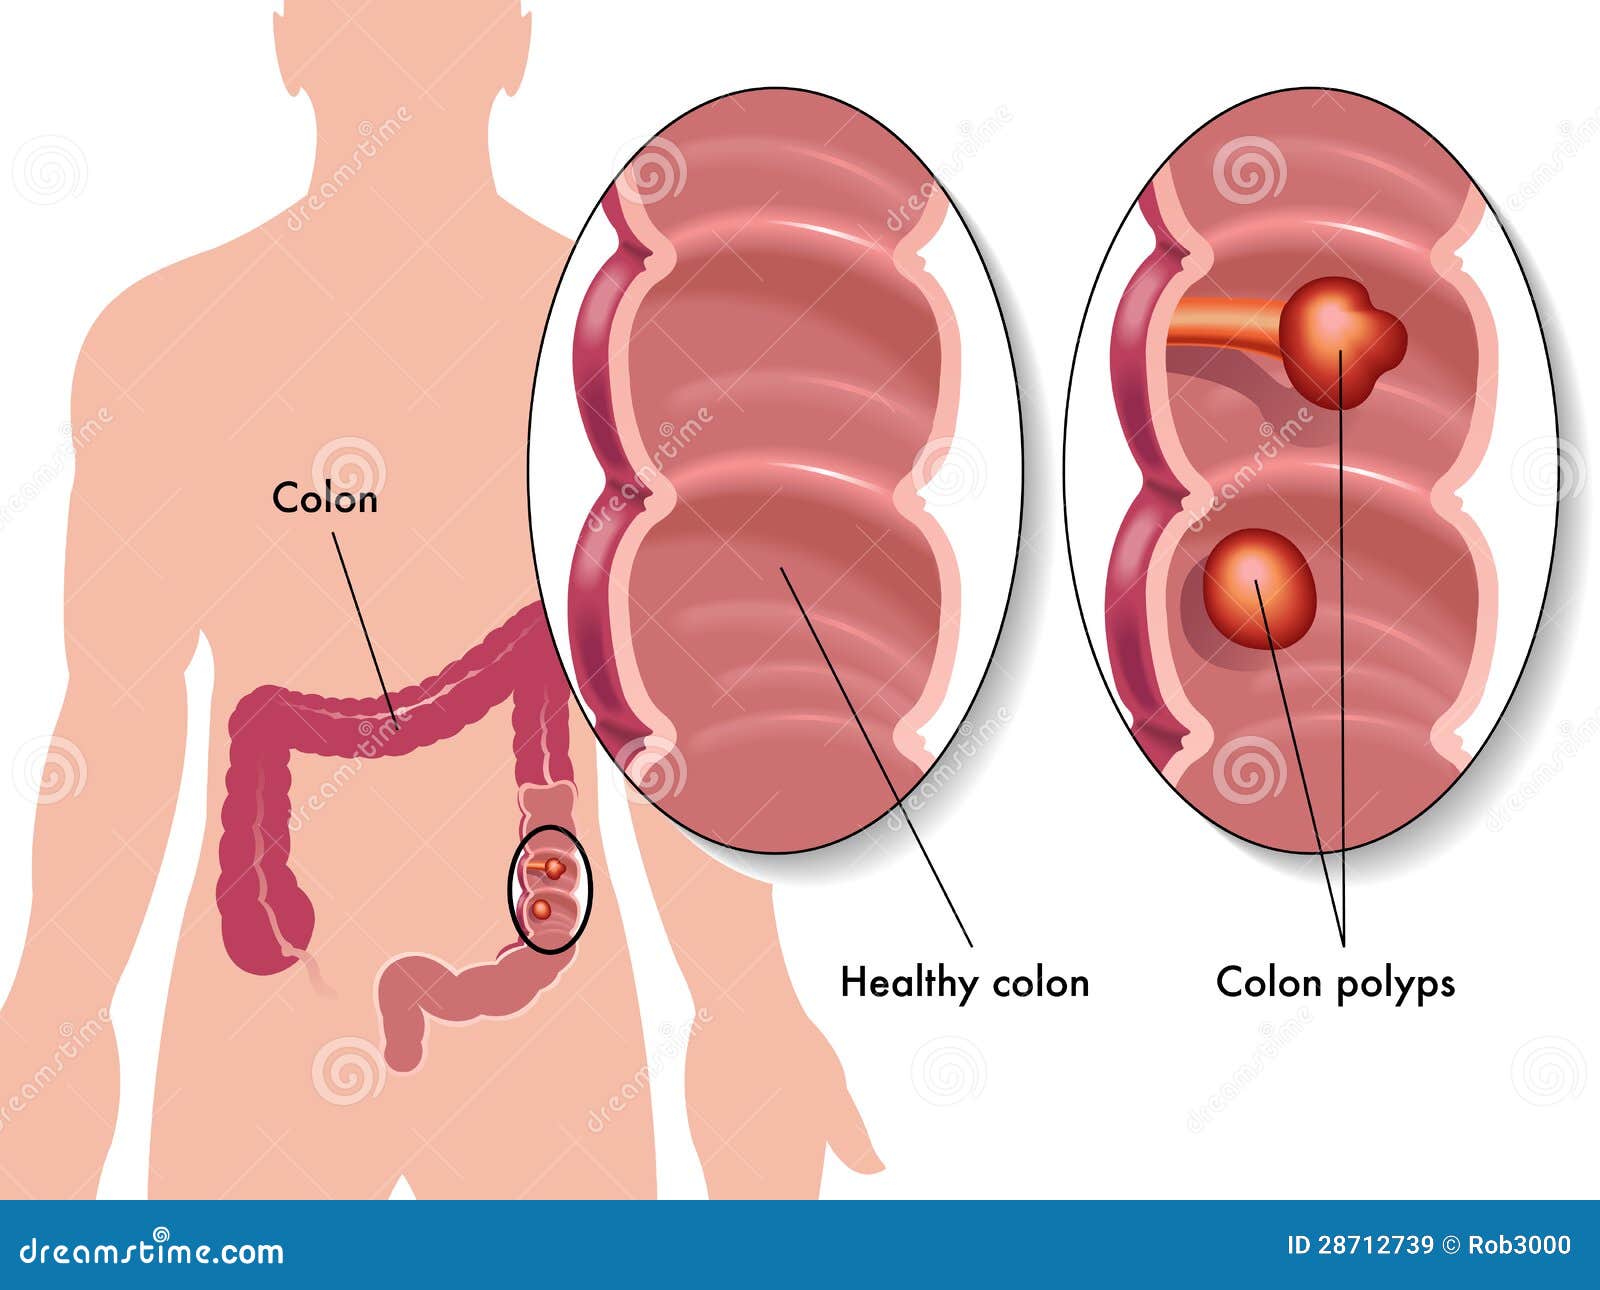 colon polyps